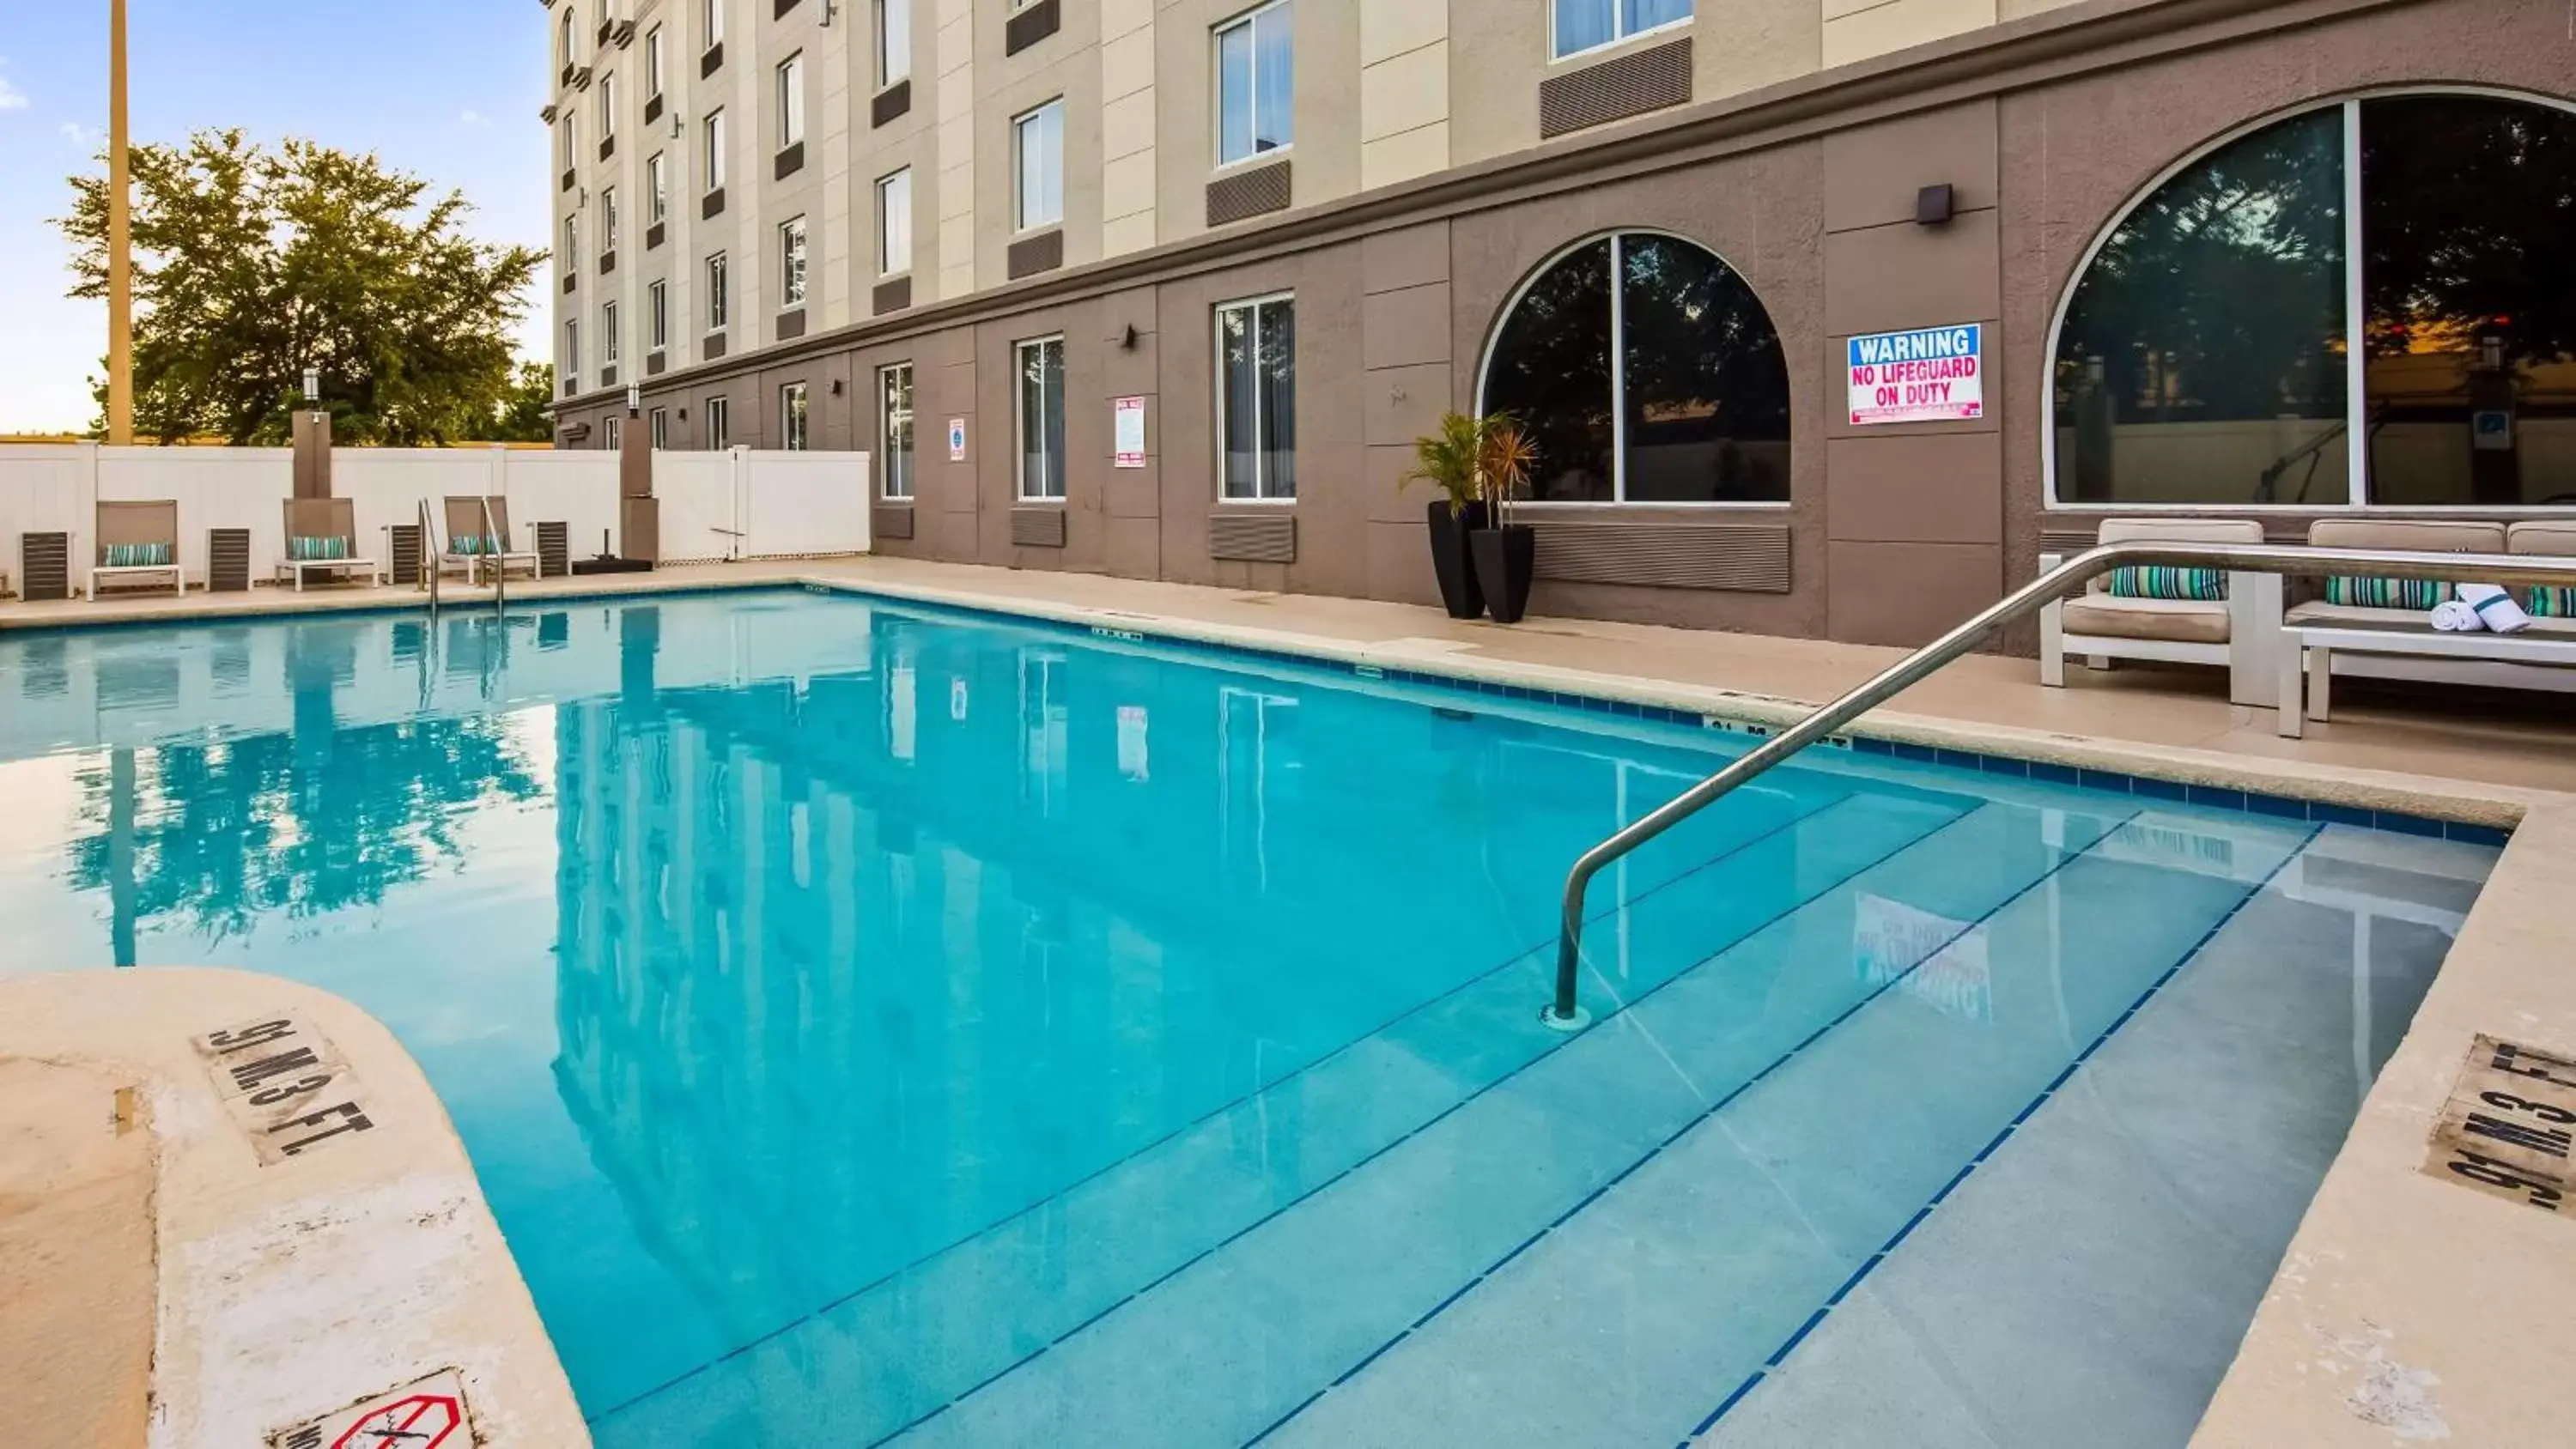 On site, Swimming Pool in Best Western Airport Inn & Suites